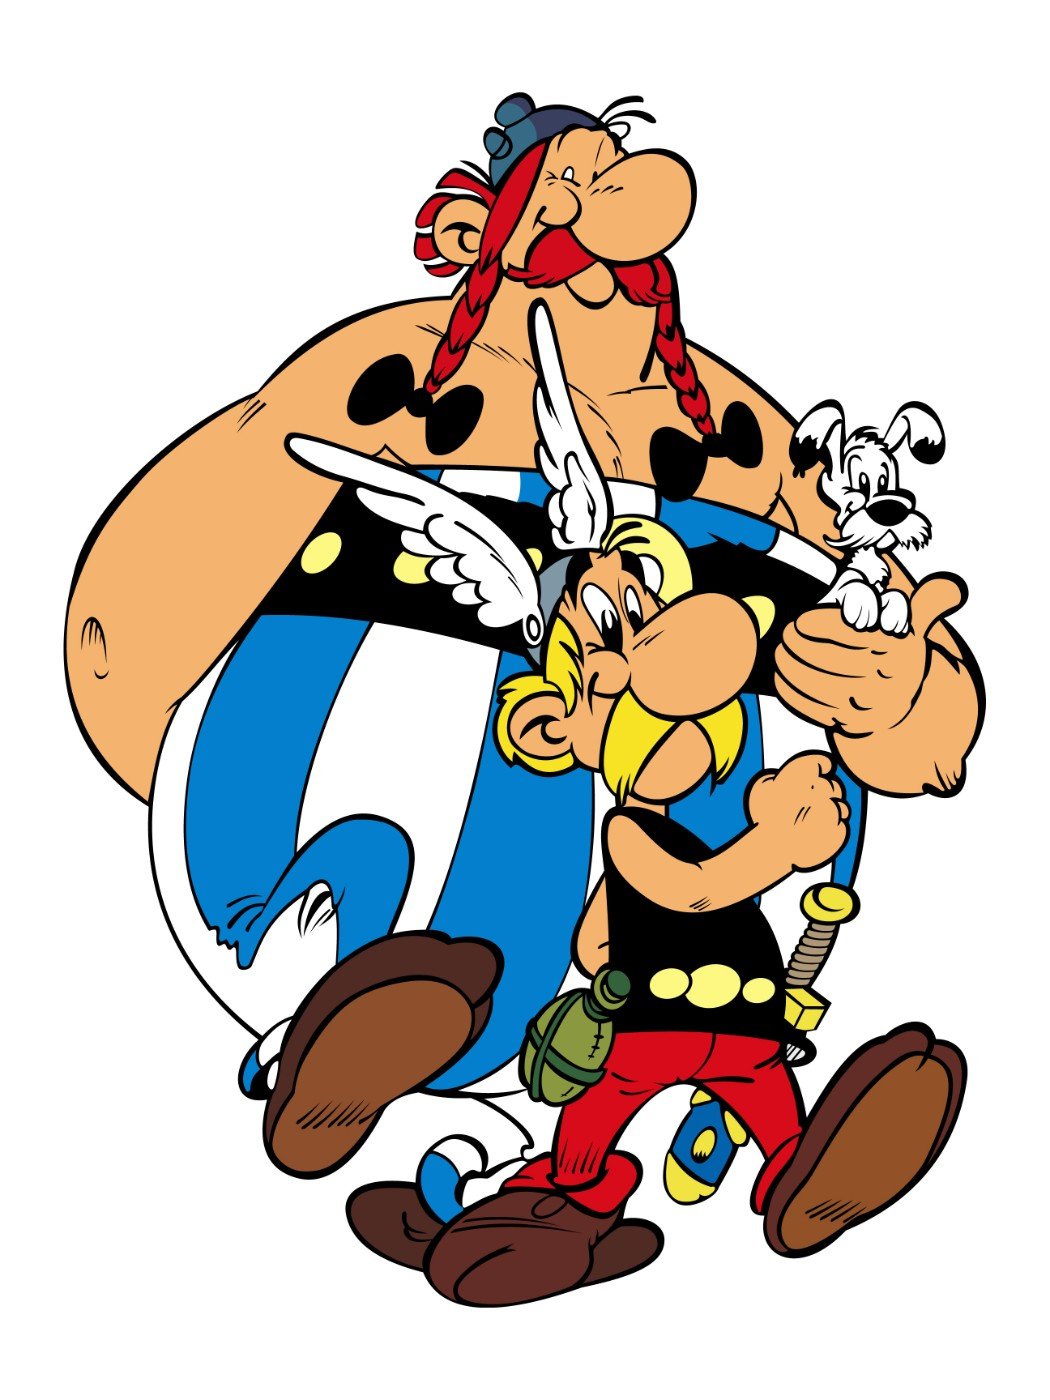 Asterix_Obelix_And_Dogmatix_-_Walk_8d32a2c5-e2a5-4ce5-93e0-9310ef56f344.jpg